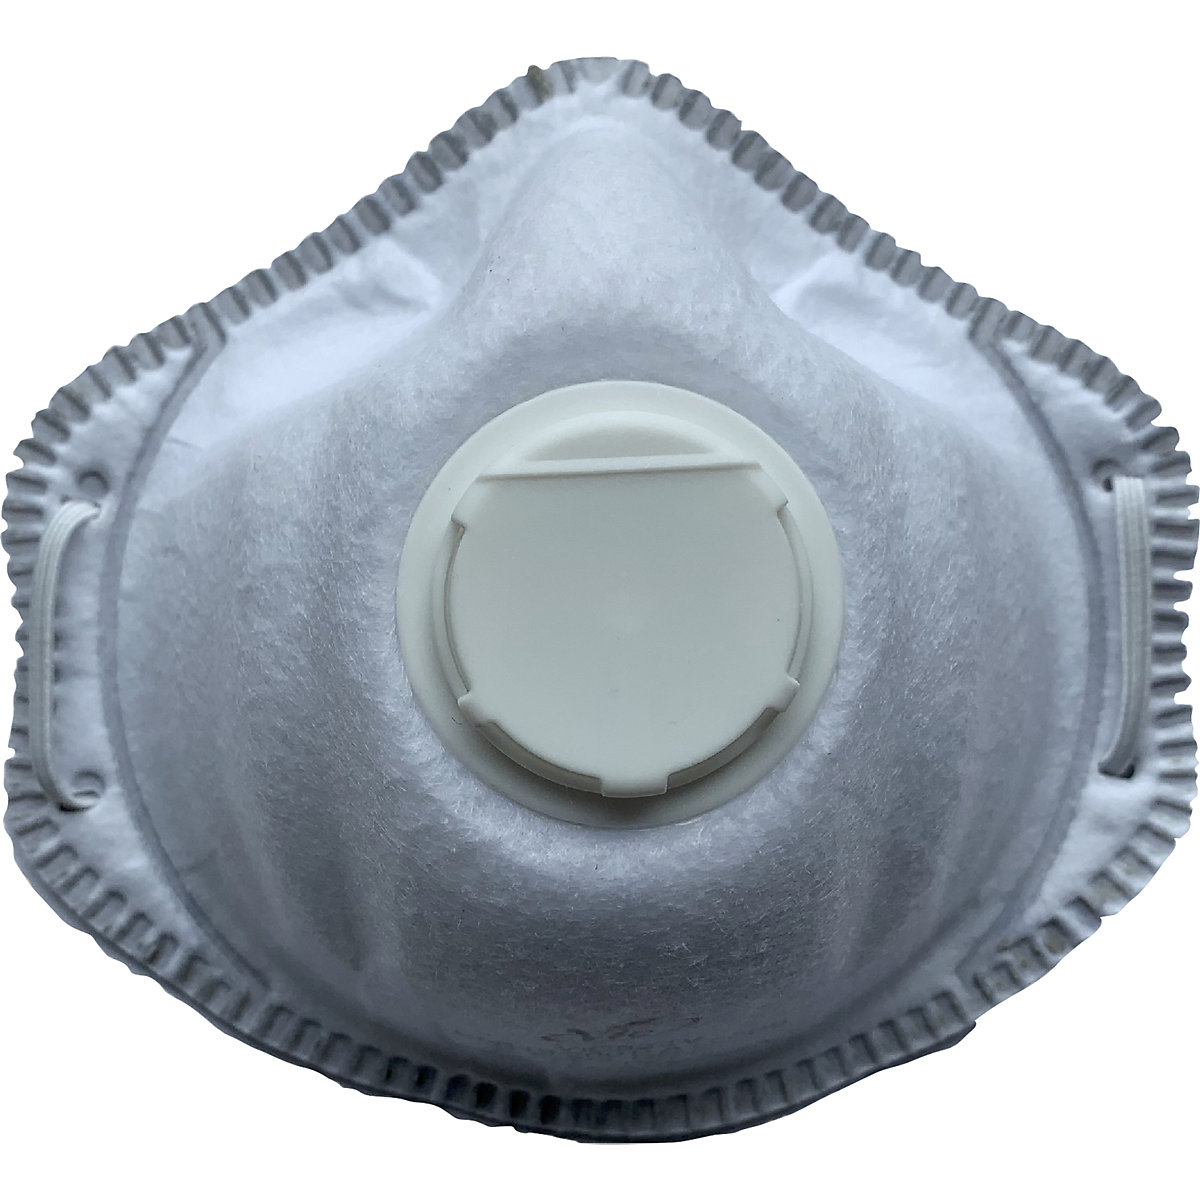 Atemschutzmaske FFP3 NR D – Korbmaske, mit Ausatemventil, VE 10 Stk, weiß